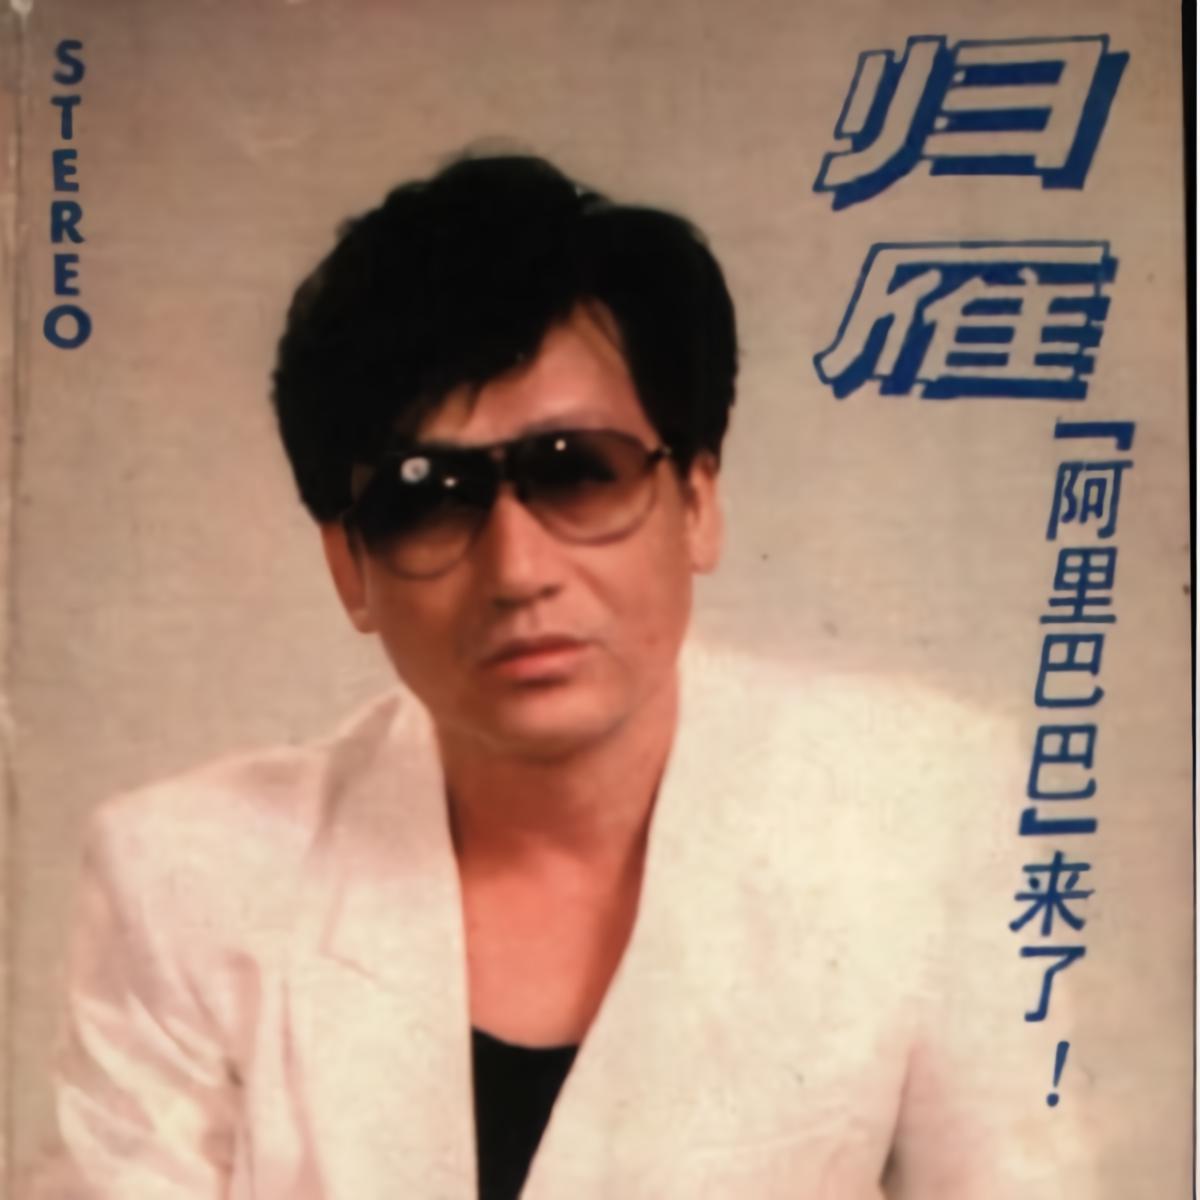 梁雁翎 1991-2013 音乐作品合集 14CD+1SACD 8.36GB – 高地音乐